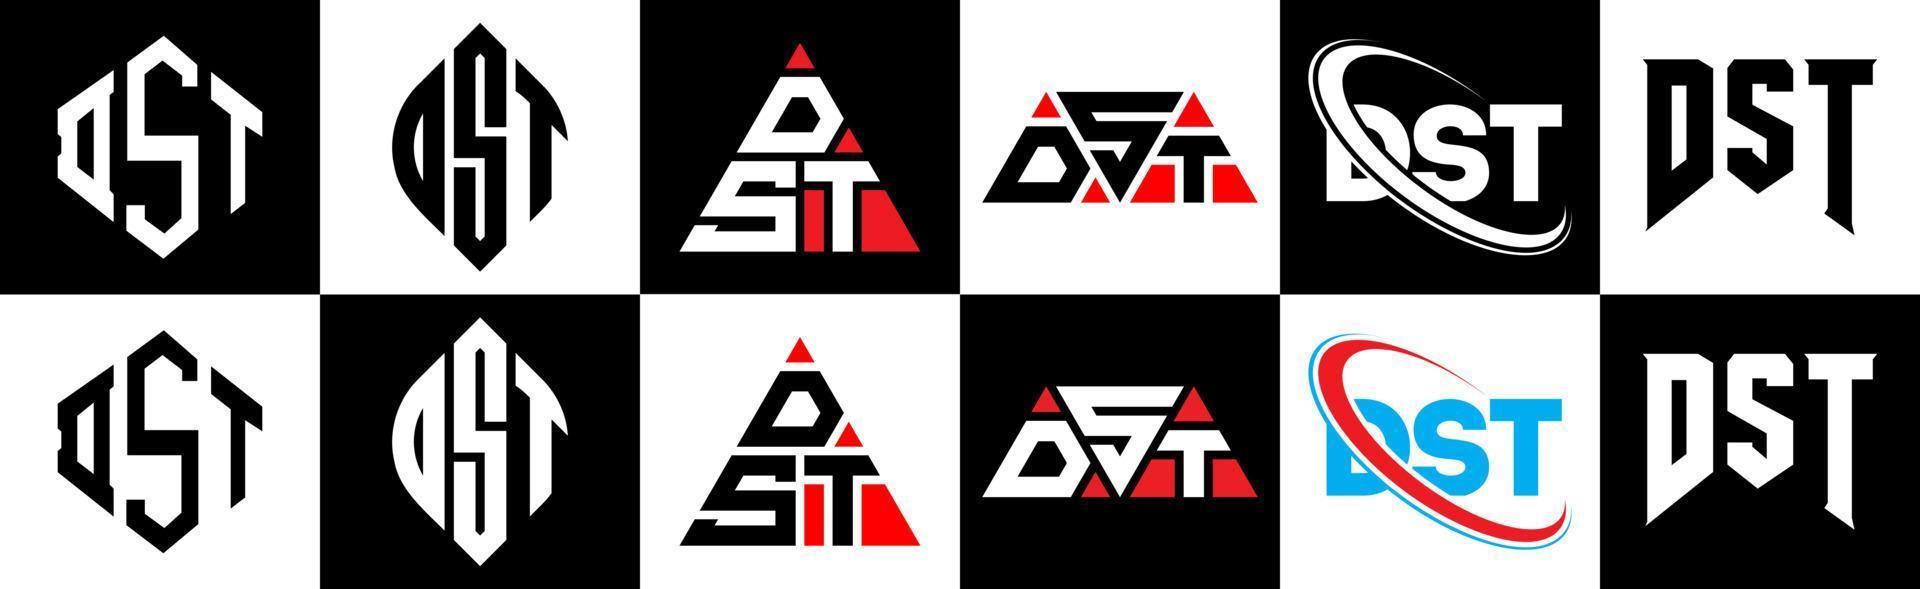 dst-Buchstaben-Logo-Design in sechs Stilen. dst Polygon, Kreis, Dreieck, Sechseck, flacher und einfacher Stil mit schwarz-weißem Buchstabenlogo in einer Zeichenfläche. dst minimalistisches und klassisches Logo vektor